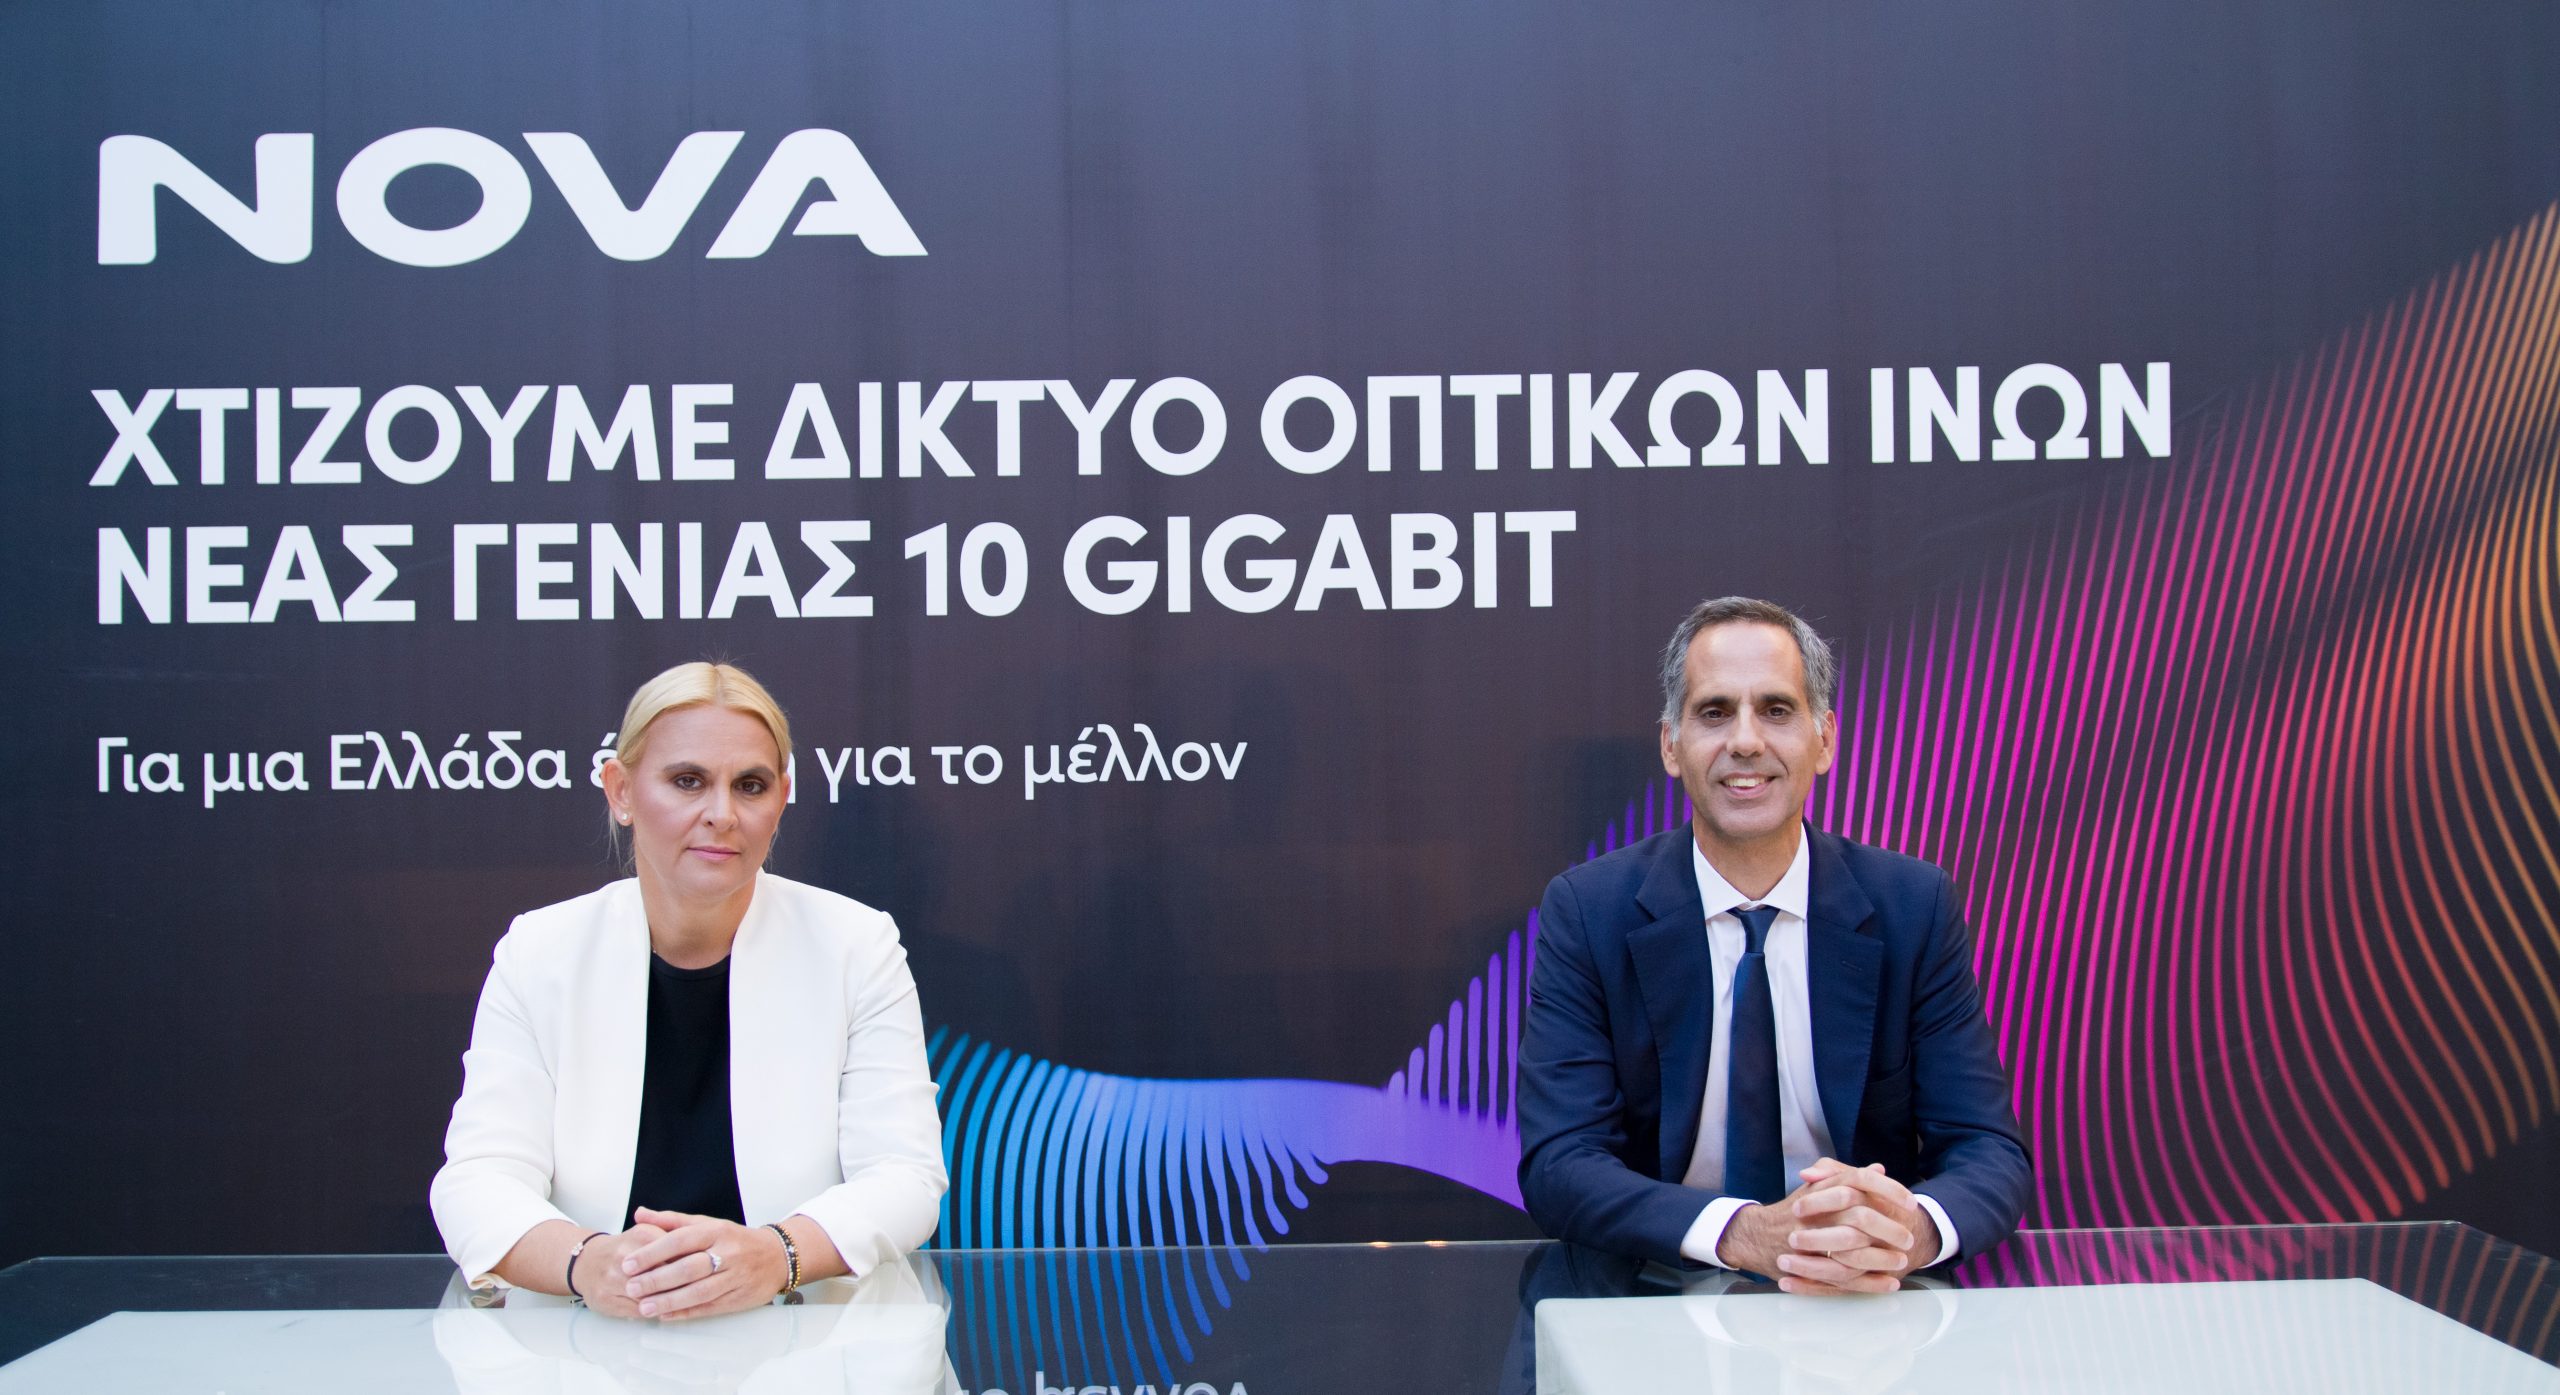 Nova: Επένδυση 2 δισ. ευρώ έως το 2027